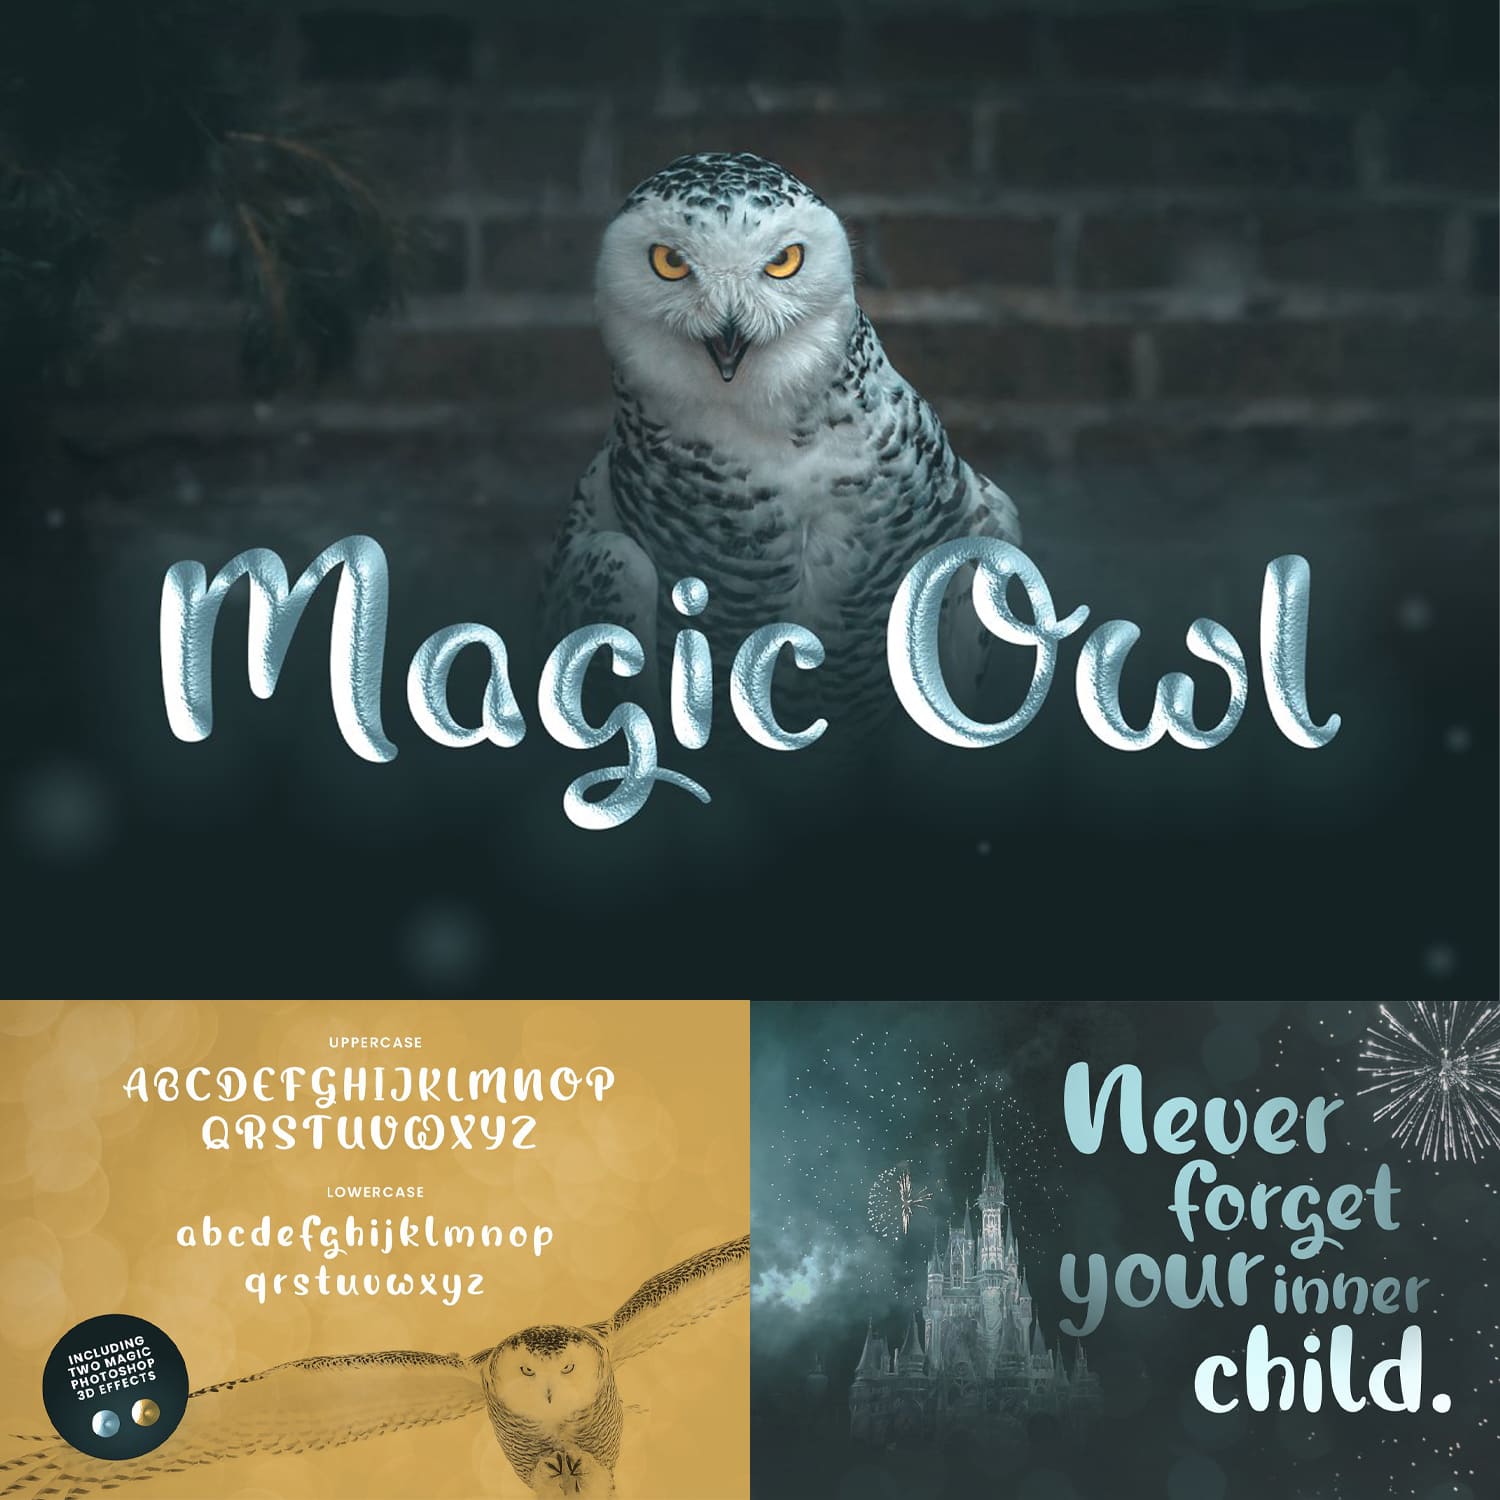 Magic Owl - An enchanting Typeface cover.